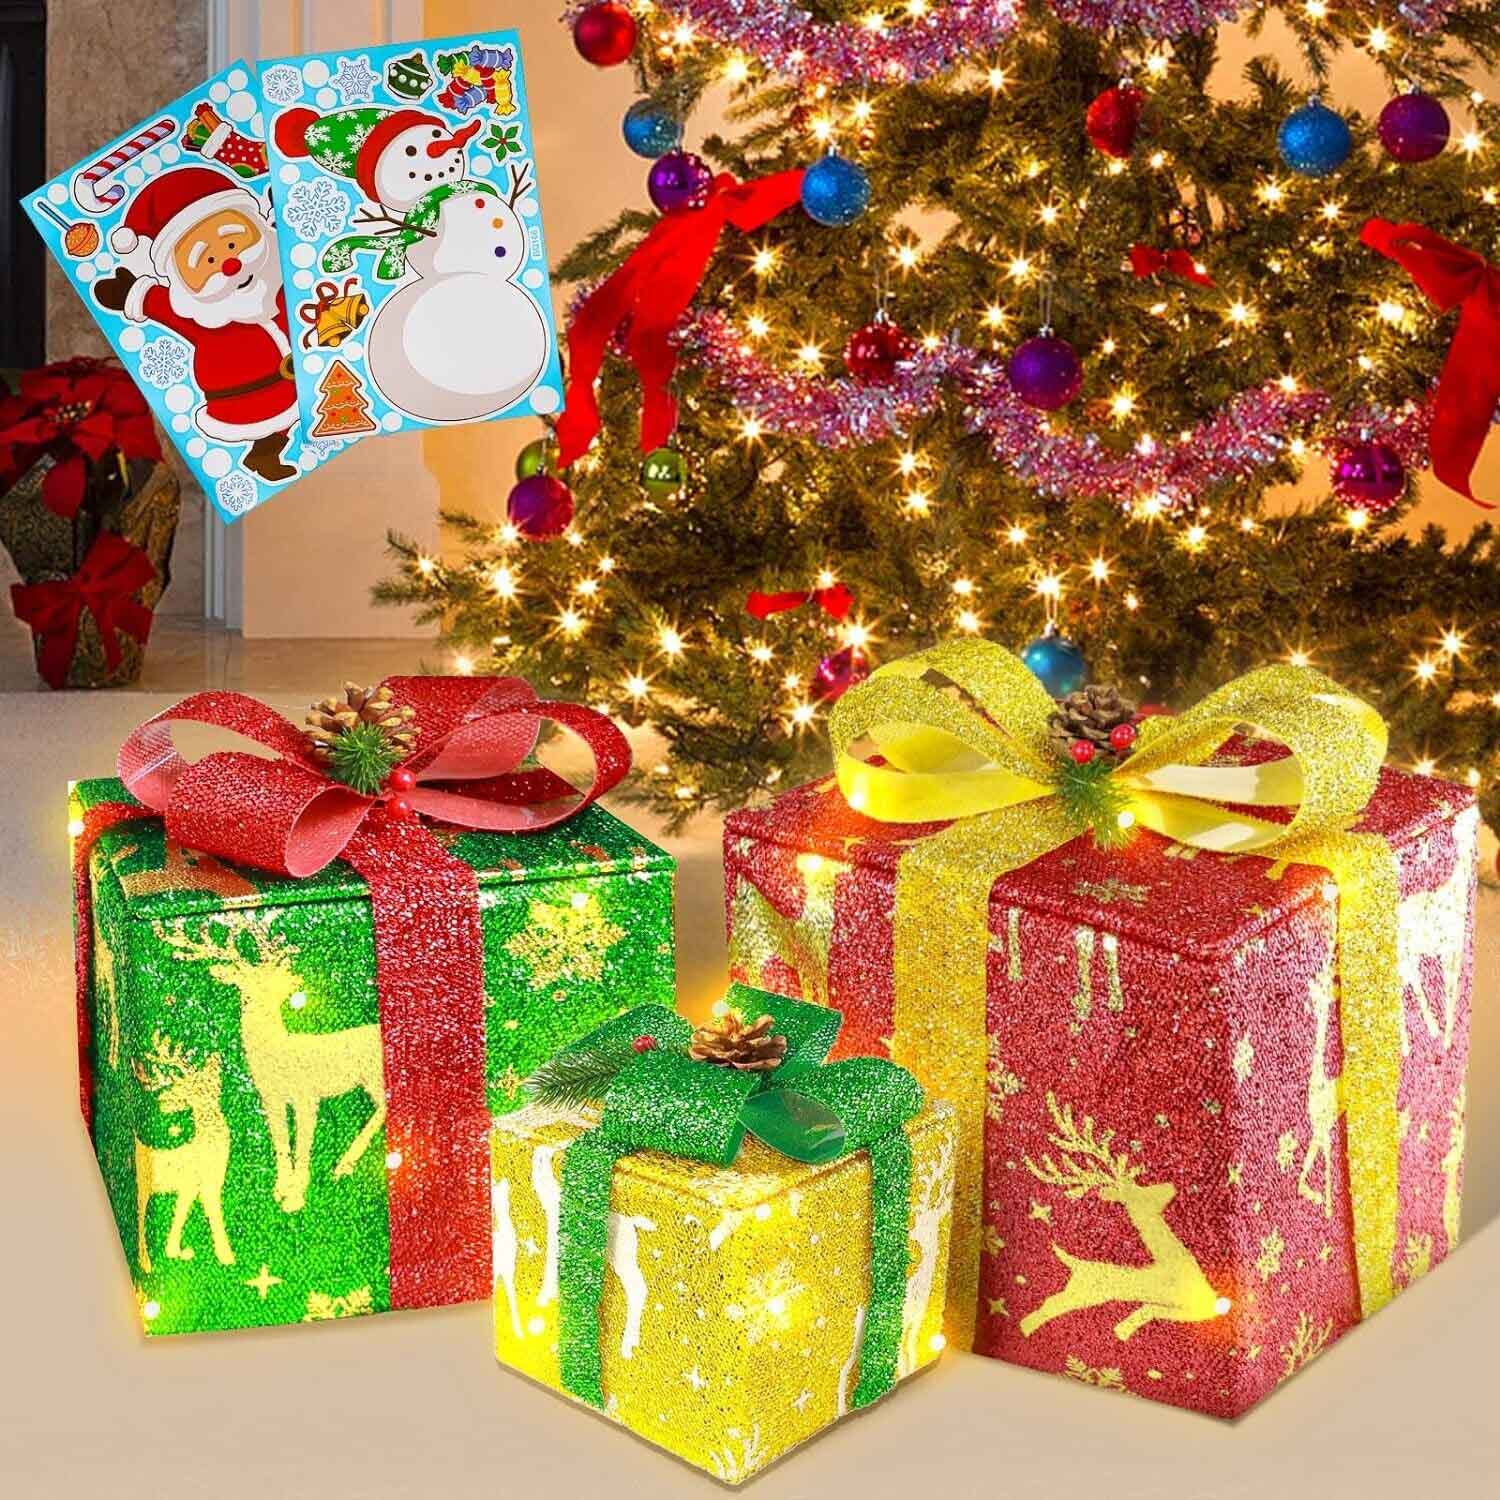 3個セット クリスマス 装飾ライト付き ギフトボックス 雰囲気アップ プレゼントボックス 屋外インテリア